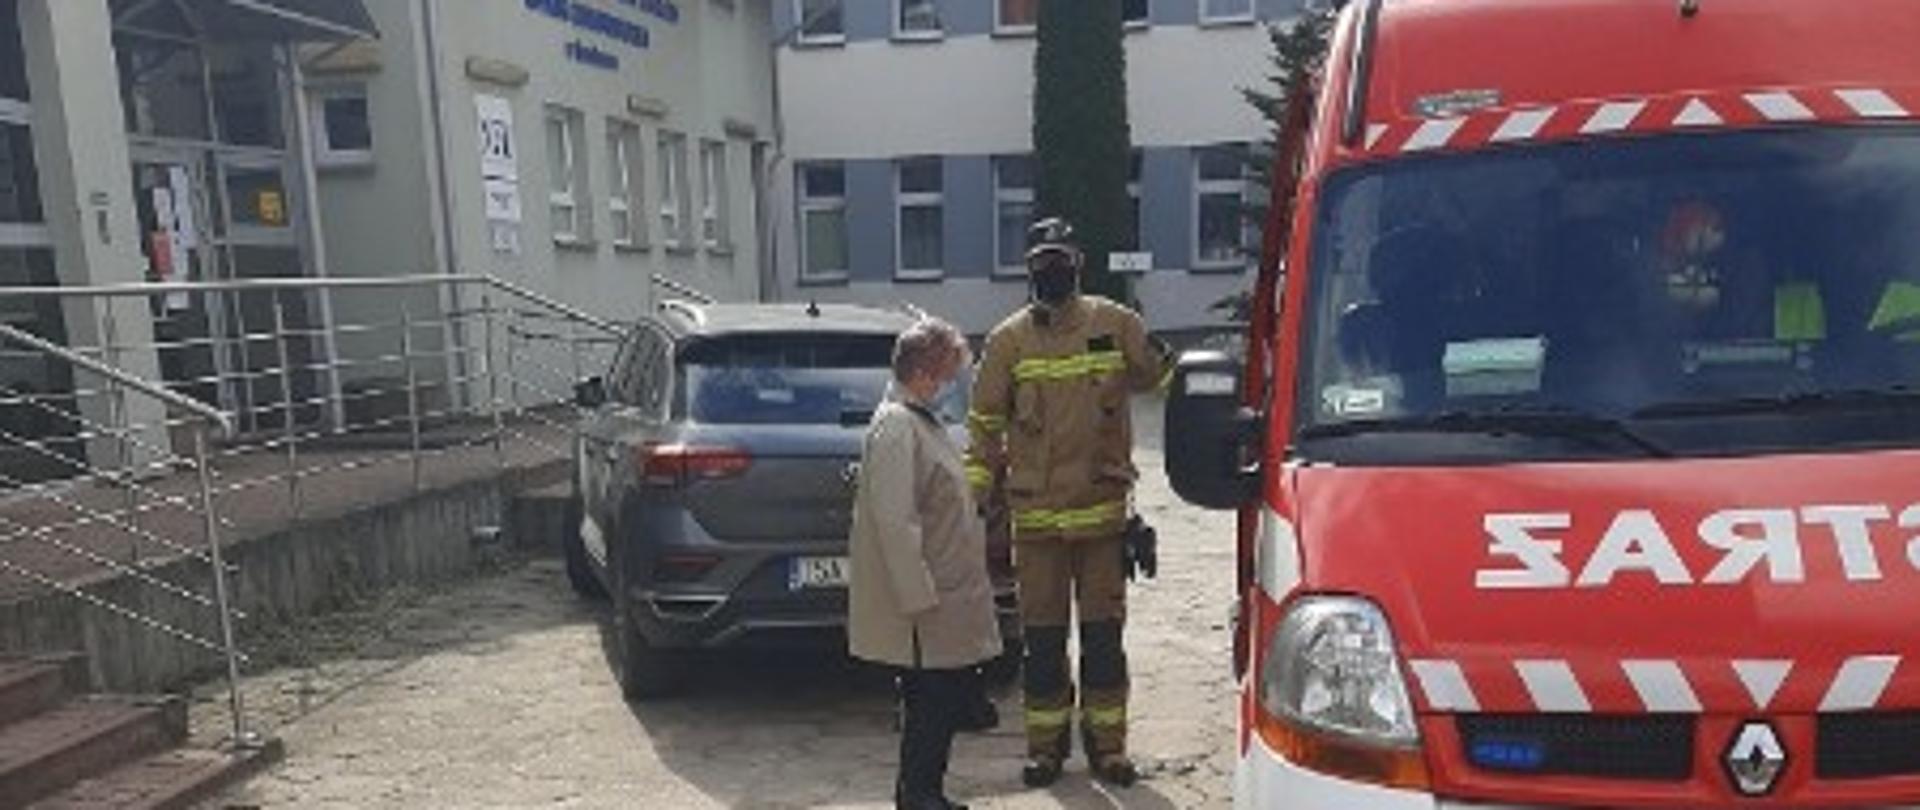 Zdjęcie zrobione przed budynkiem mieszkalnym. Strażak pomaga kobiecie wyjść ze strażackiego samochodu, którym była zawieziona na szczepienie.